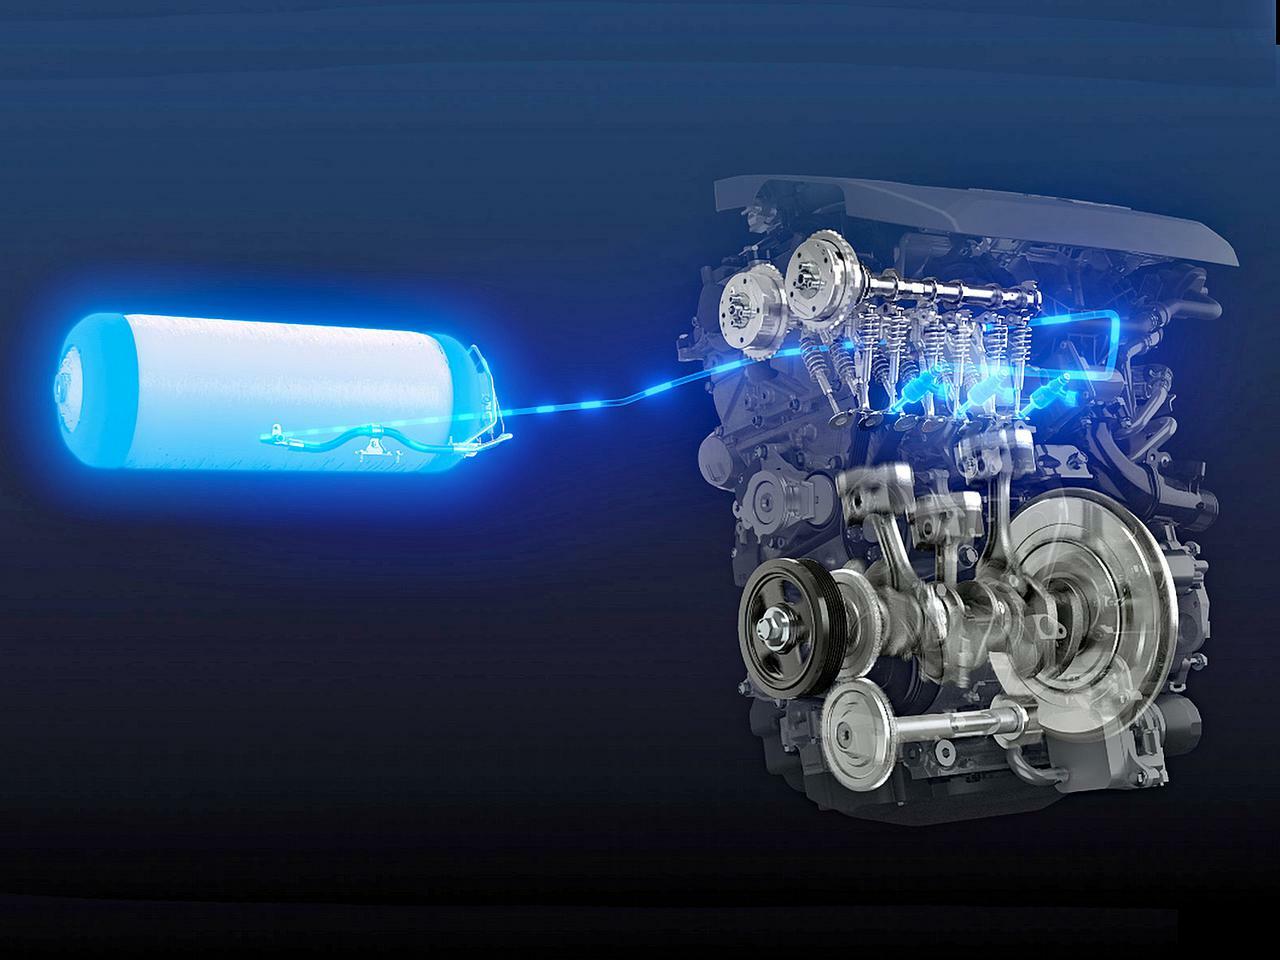 トヨタが水素エンジンを開発。カローラスポーツに搭載してスーパー耐久に実戦投入。さらなる技術革新に挑戦する